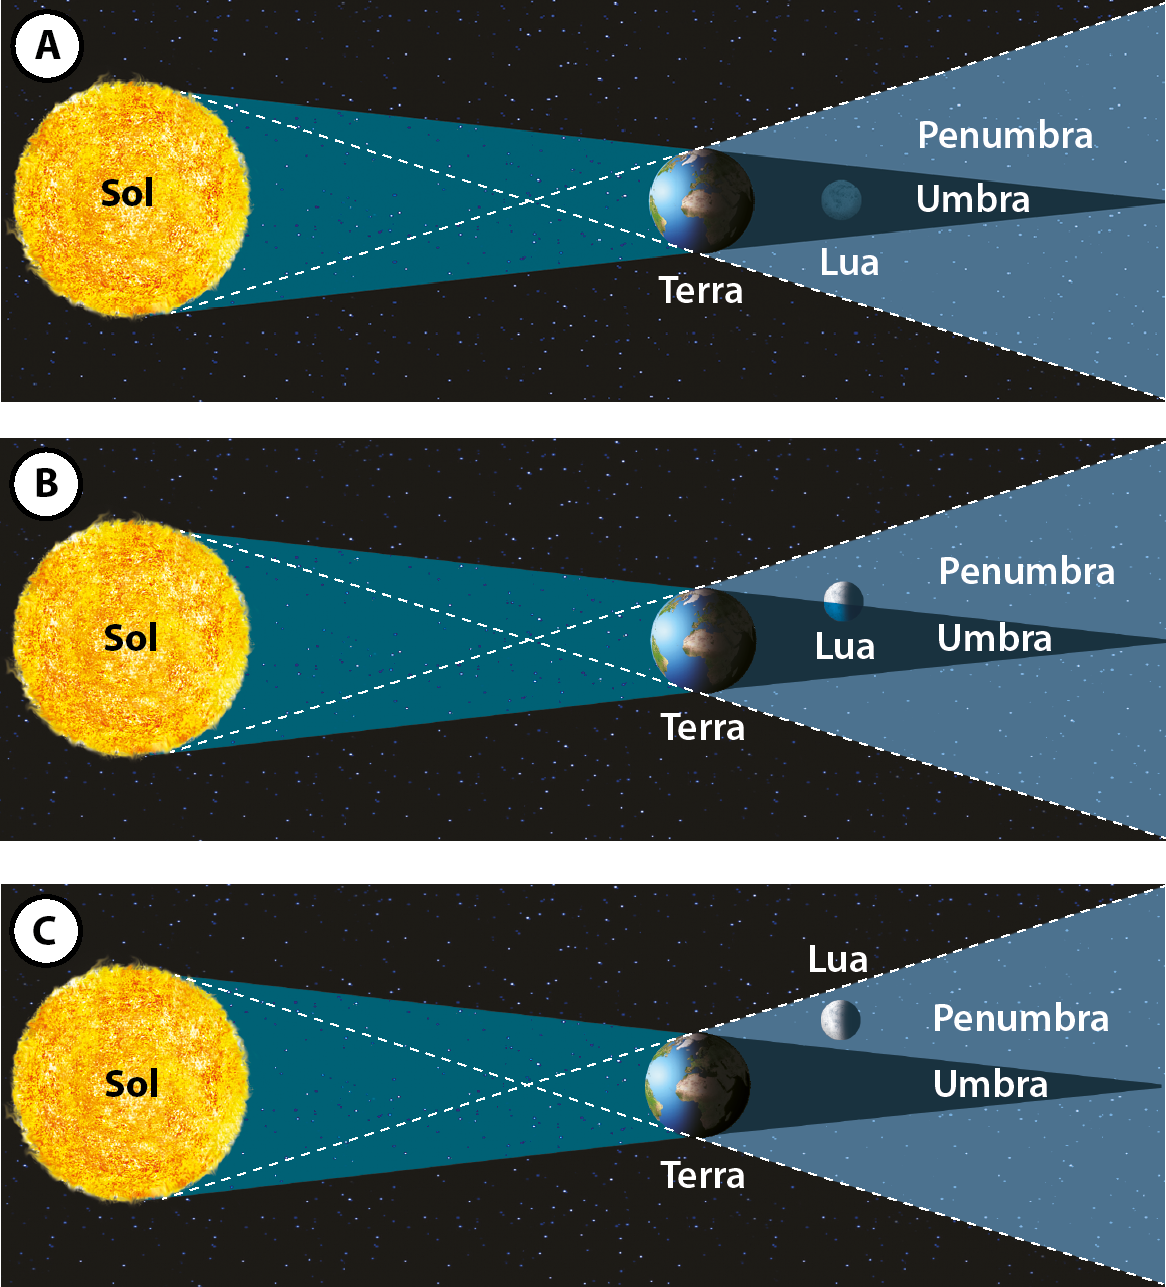 Ilustração A. À esquerda está o Sol, que emite luz em direção à Terra. À direita da Terra, projeta-se um cone de sombra que se abre, nomeado penumbra, e, dentro dele, um cone de sombra mais escura que se fecha, nomeado umbra. A Lua está dentro da umbra. Ilustração B. Na mesma cena, a Lua está na divisão entre a umbra e a penumbra. Ilustração C. Na mesma cena, a Lua está na região da penumbra.